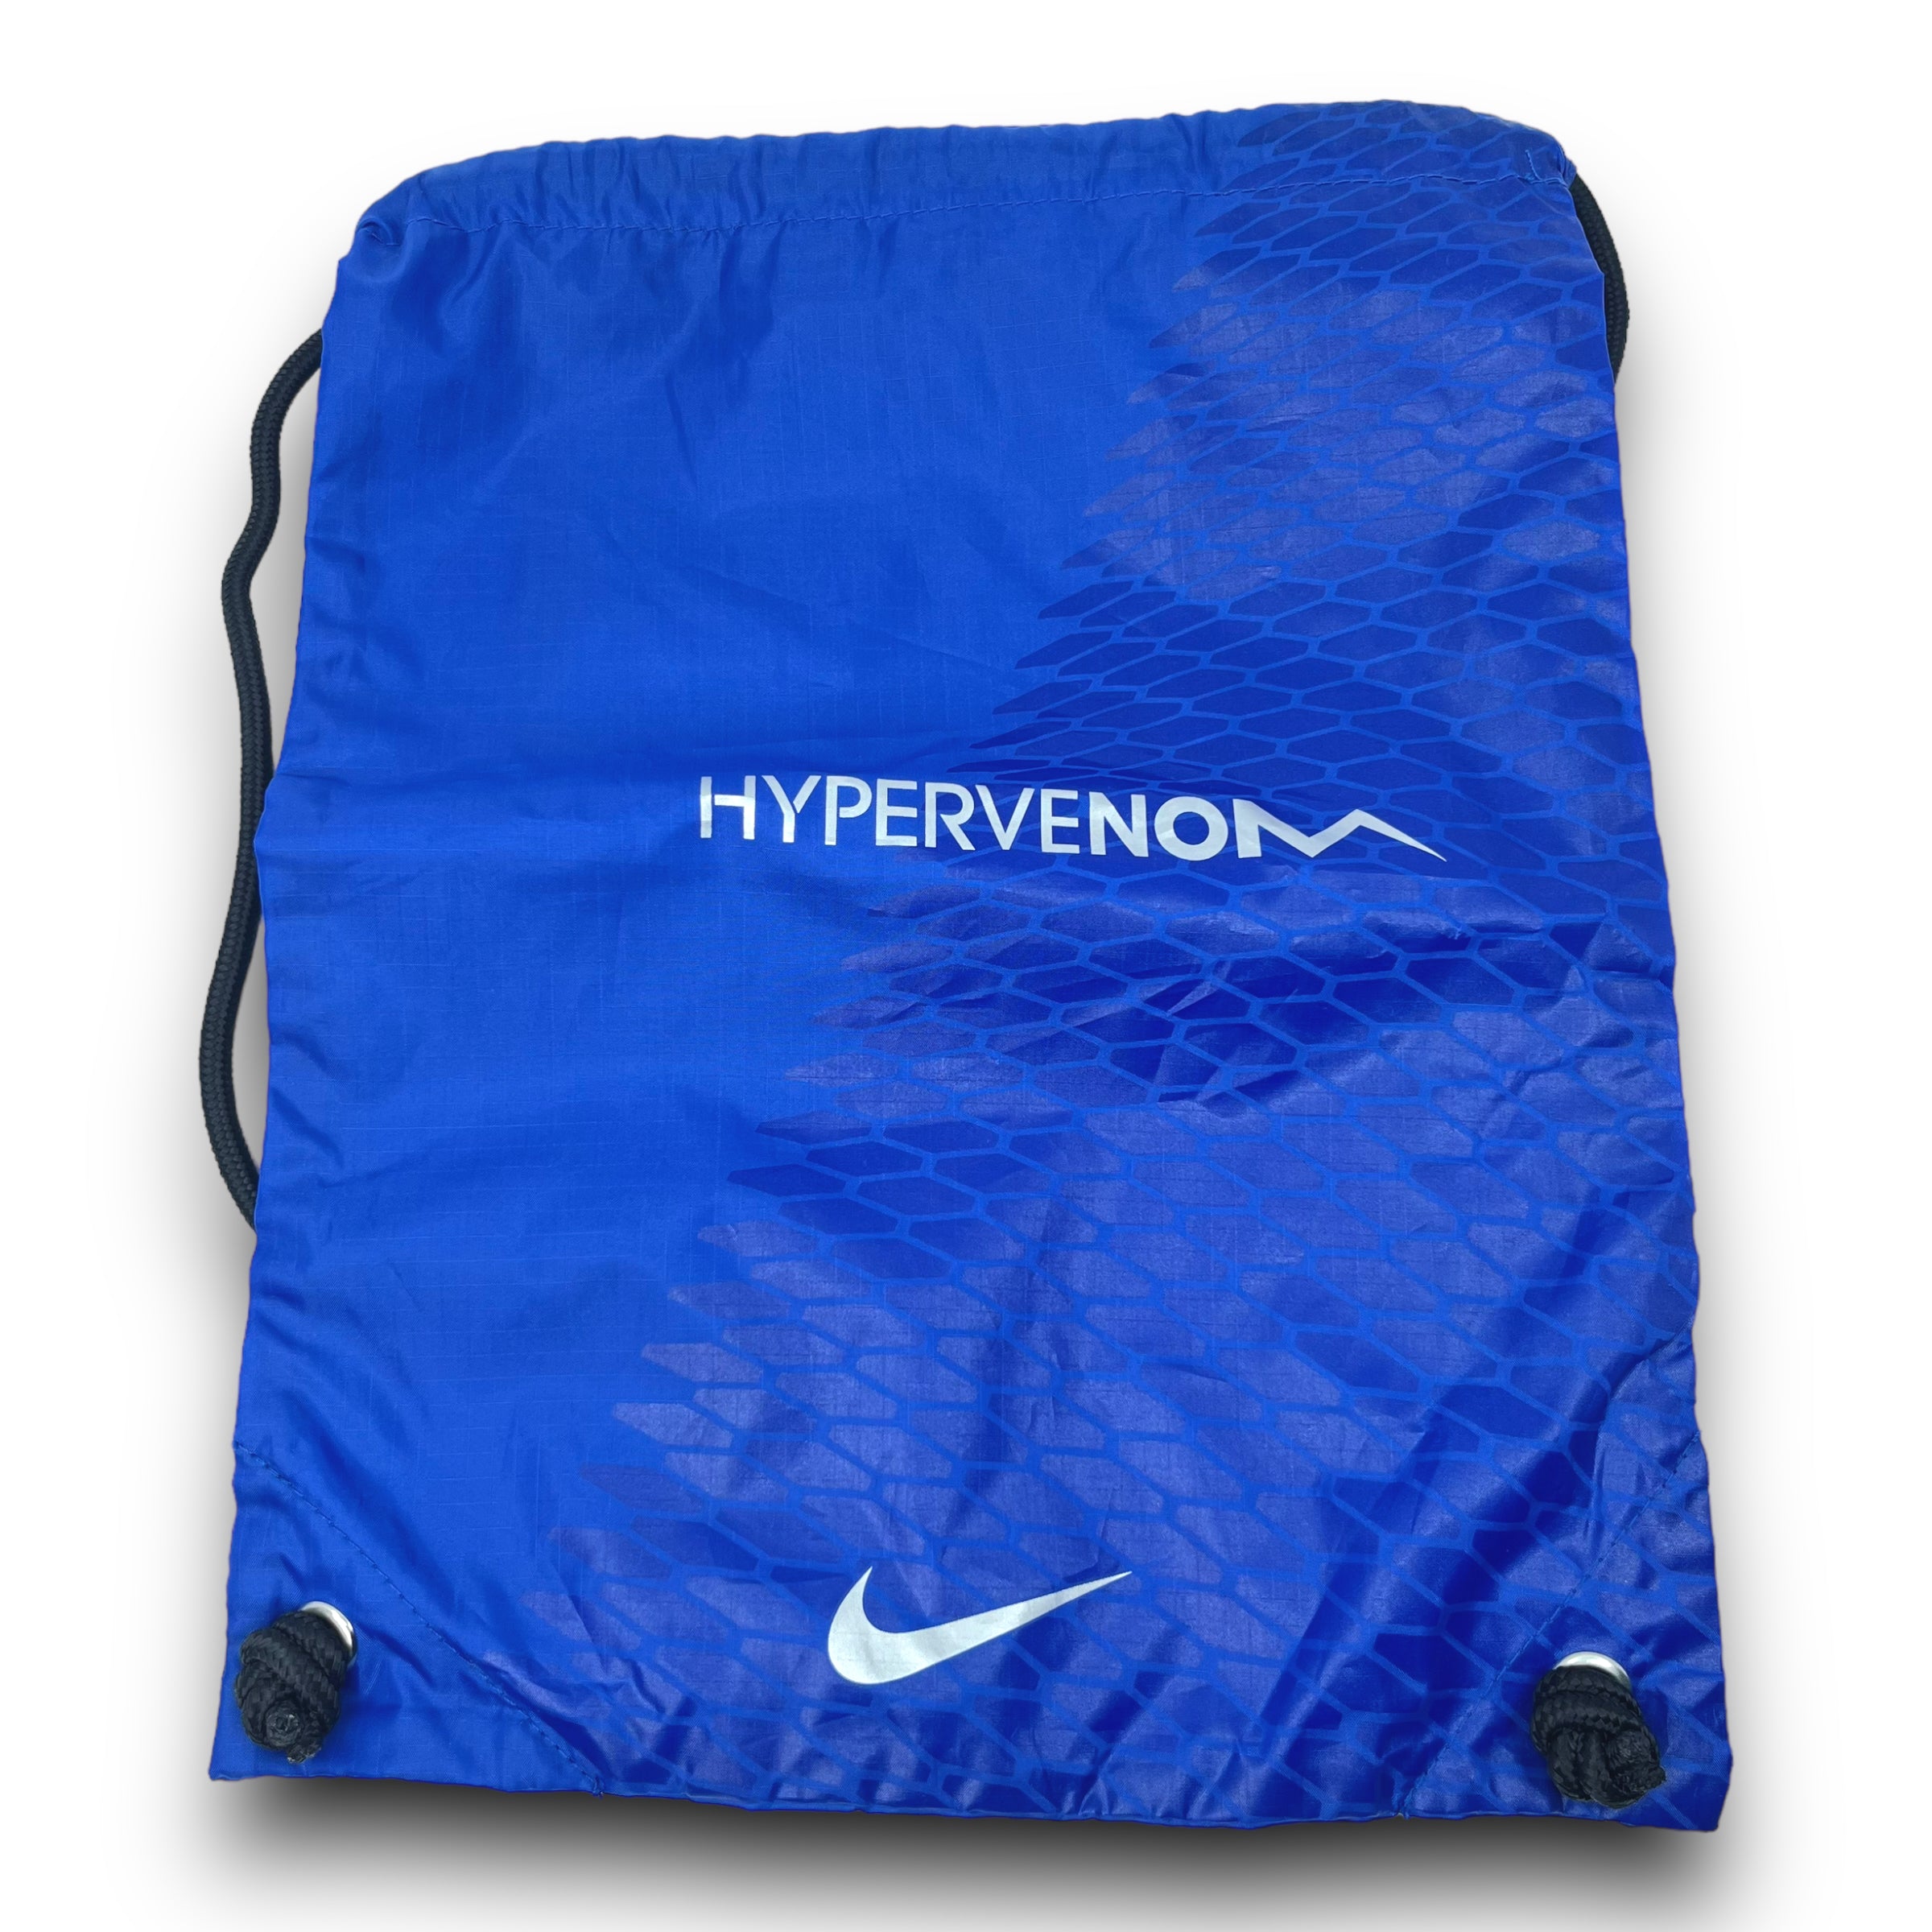 Nike Hypervenom Phantom Aubameyang Boots Revealed - Footy Headlines